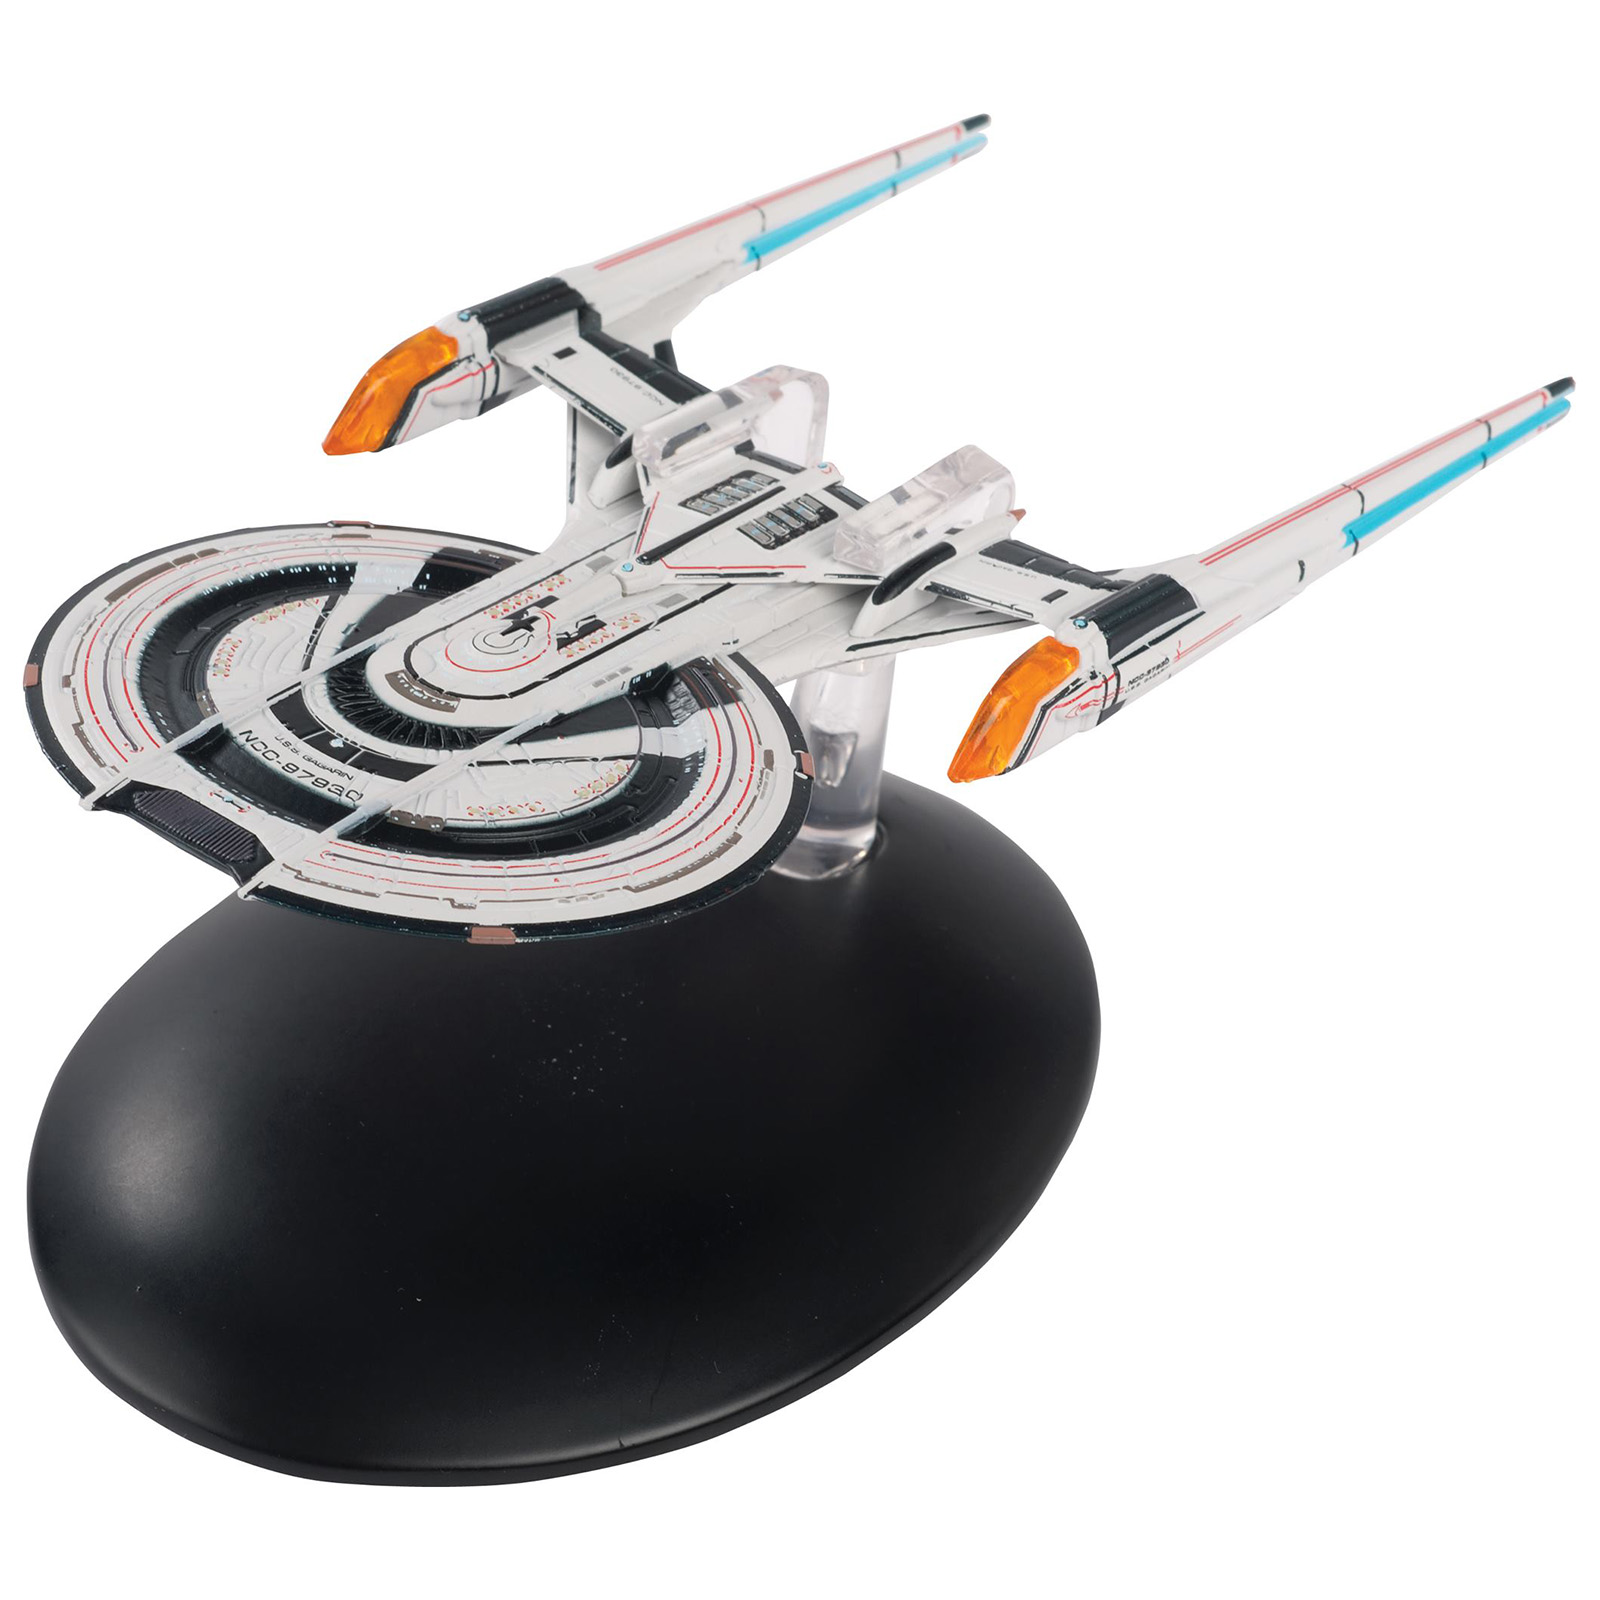 A.F.S Khitomer Battlecruiser Star Trek Online Starship Collection de Eaglemoss Collections Star Trek